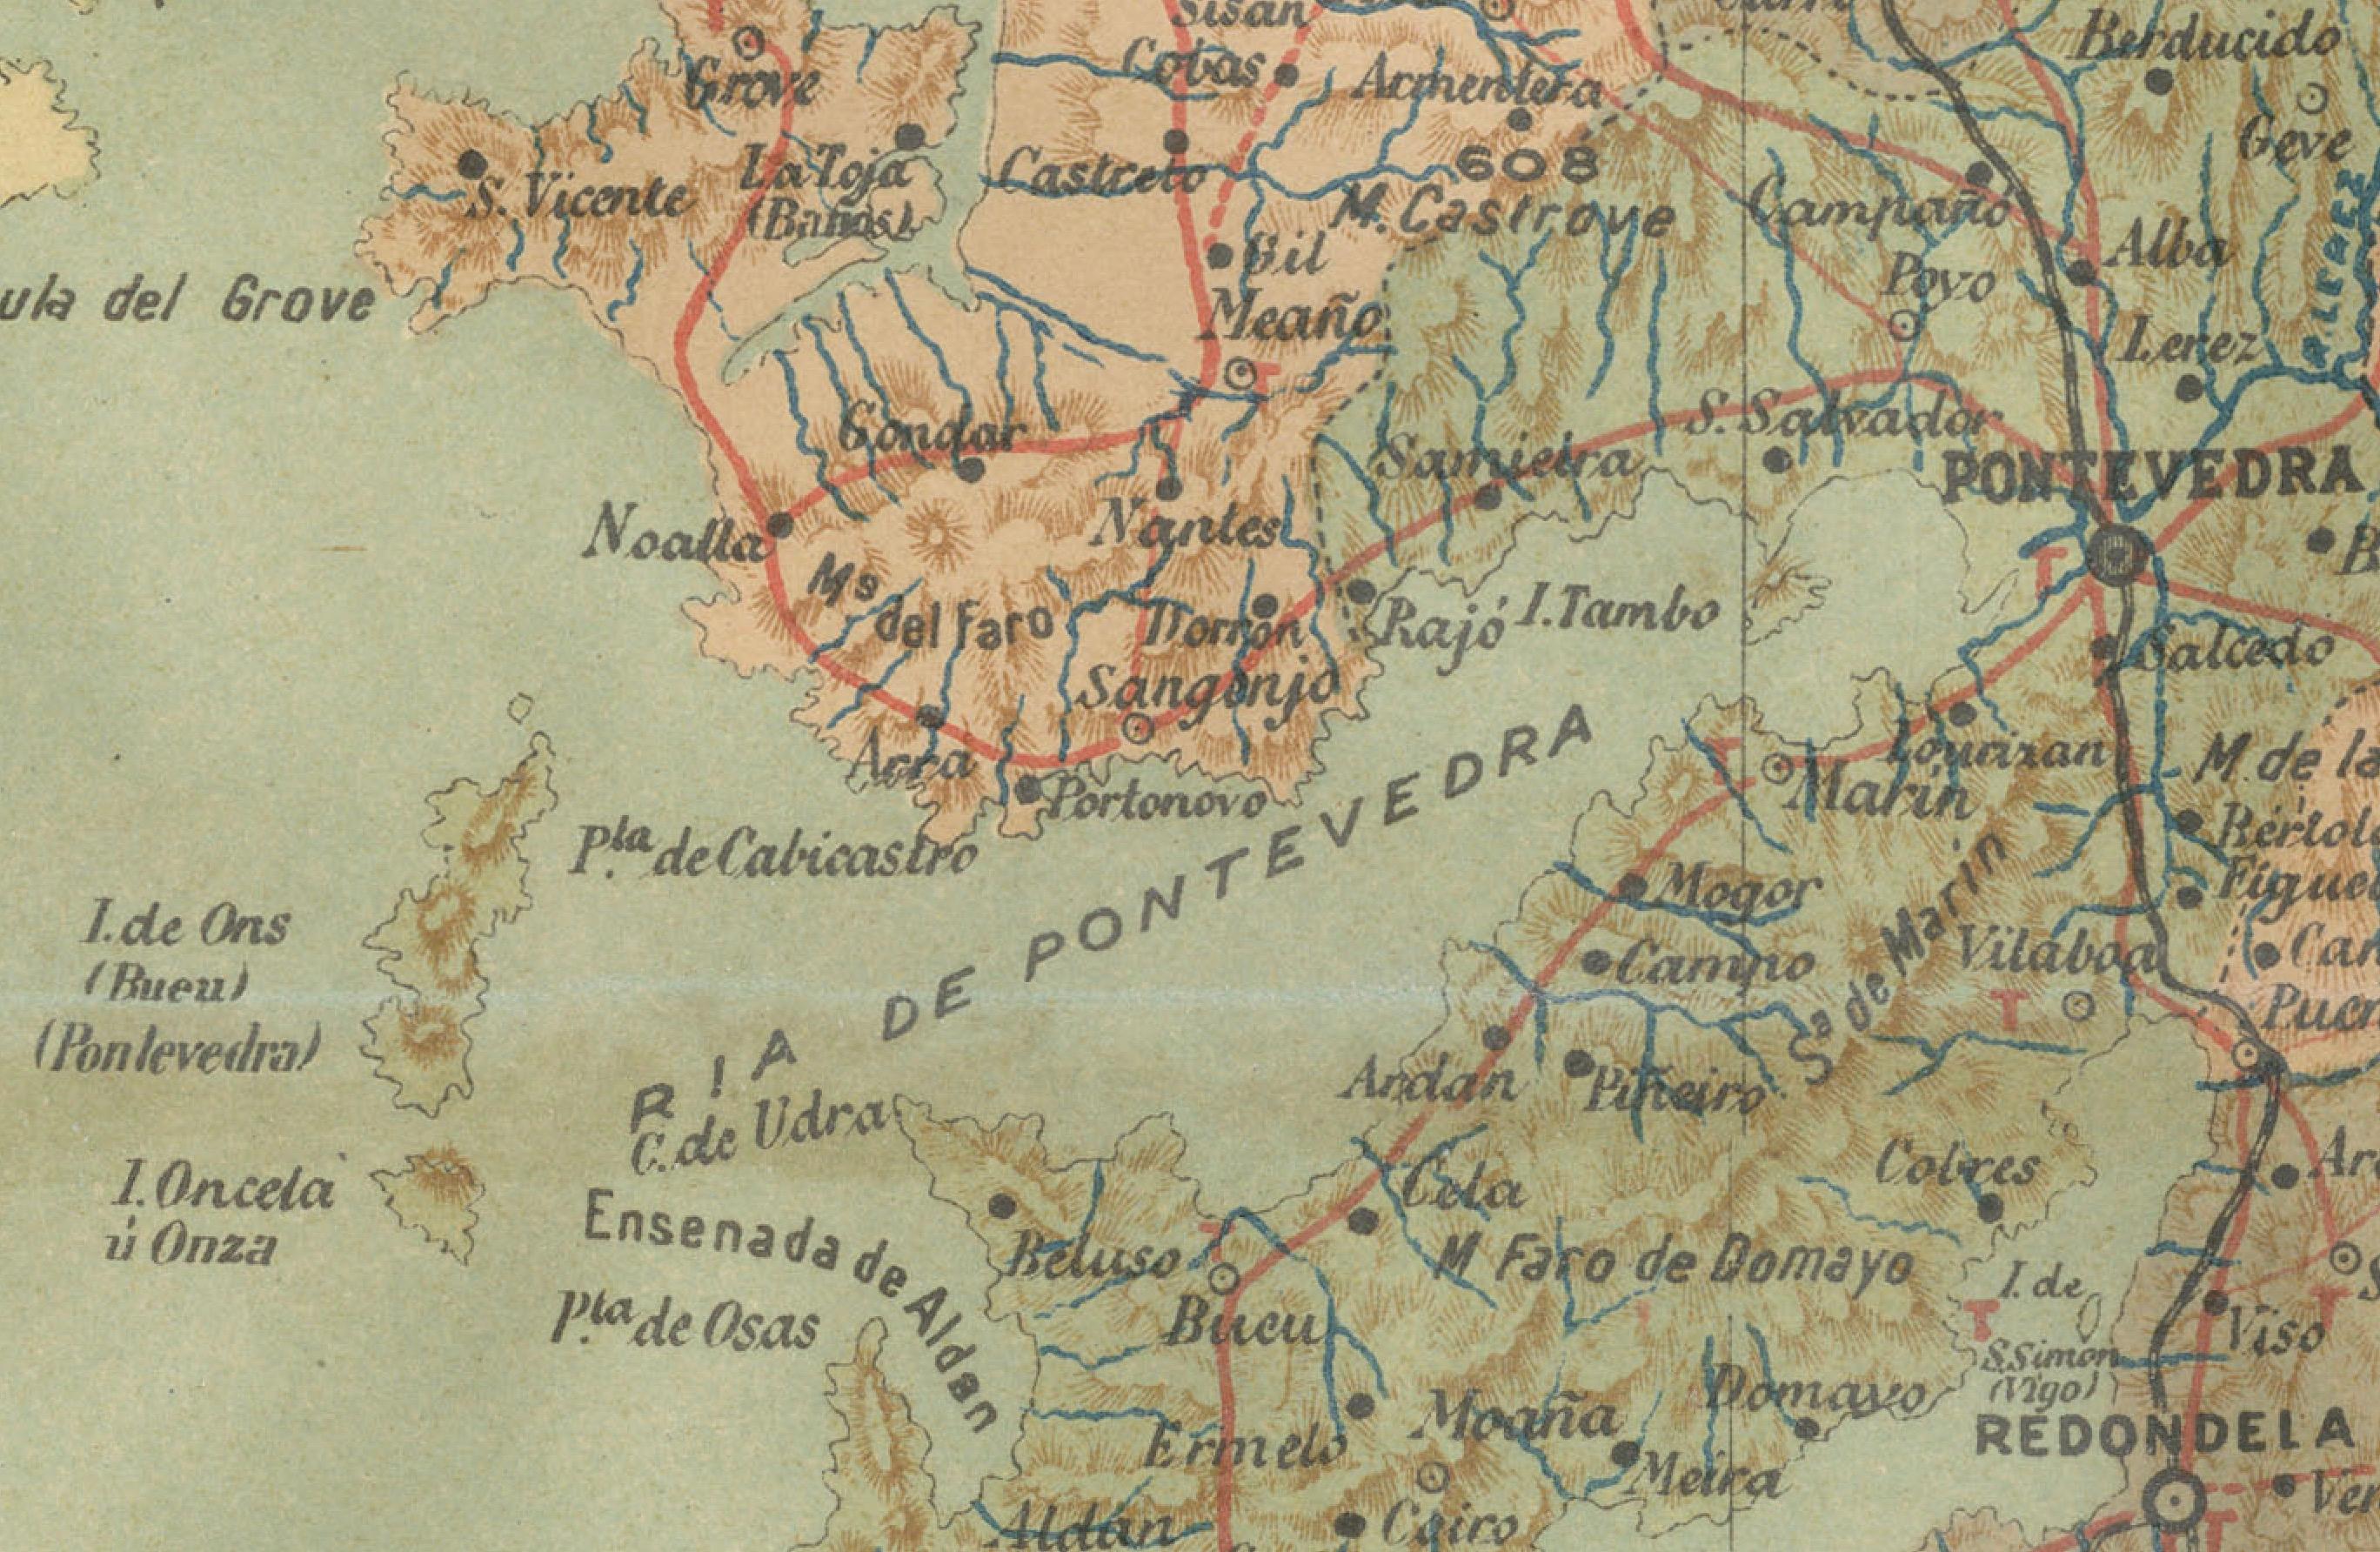 Paper Cartographic Survey of Pontevedra, 1902: Crossroads of Galicia